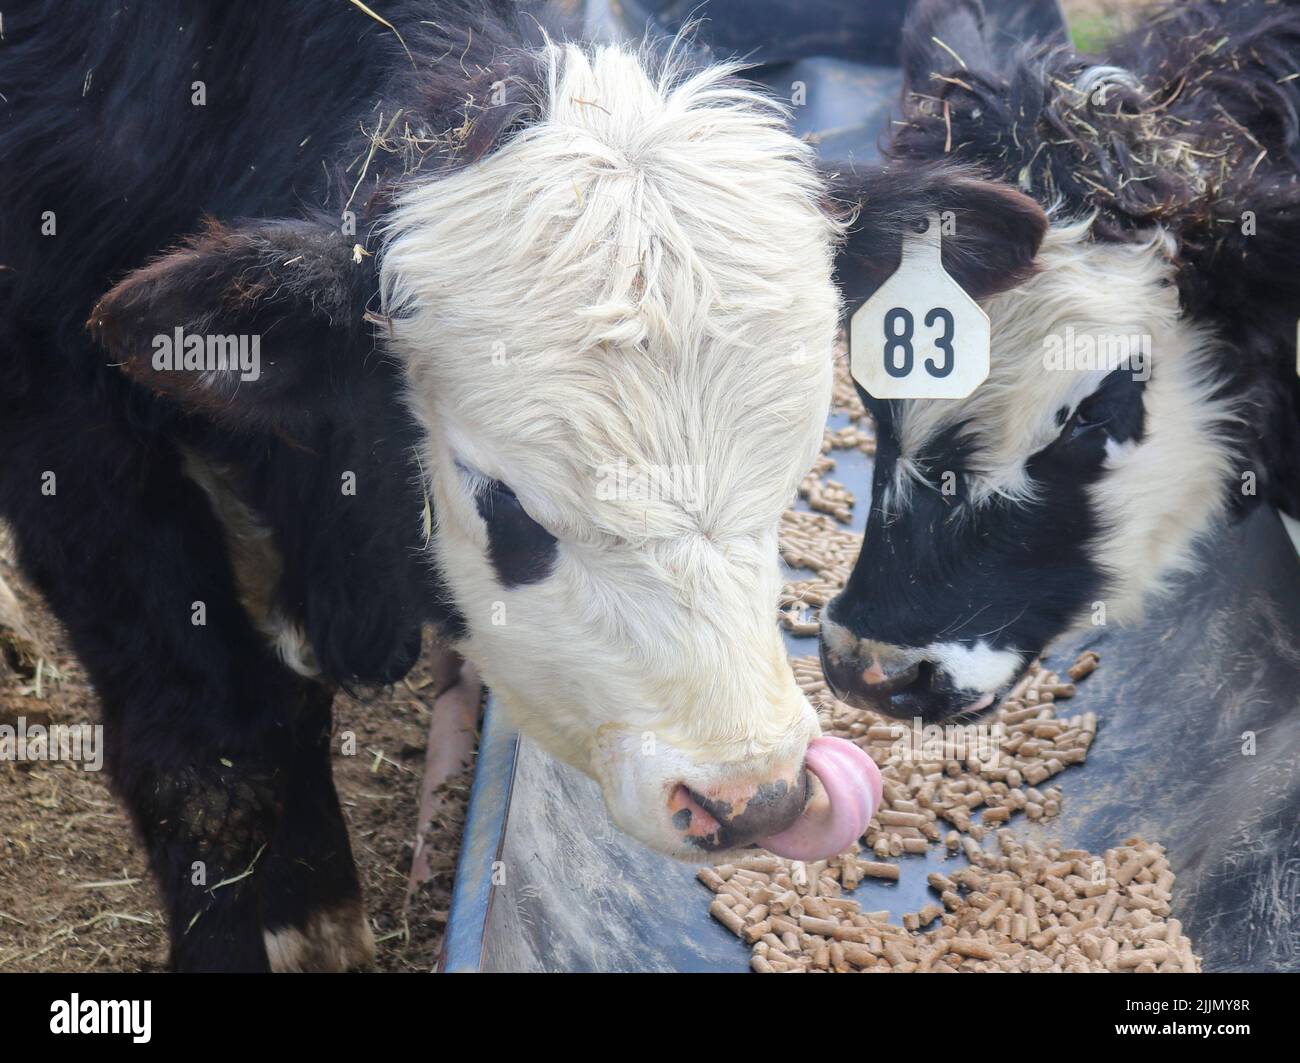 Primer plano de dos vacas negras y blancas comiendo y una recogiendo su nariz Foto de stock